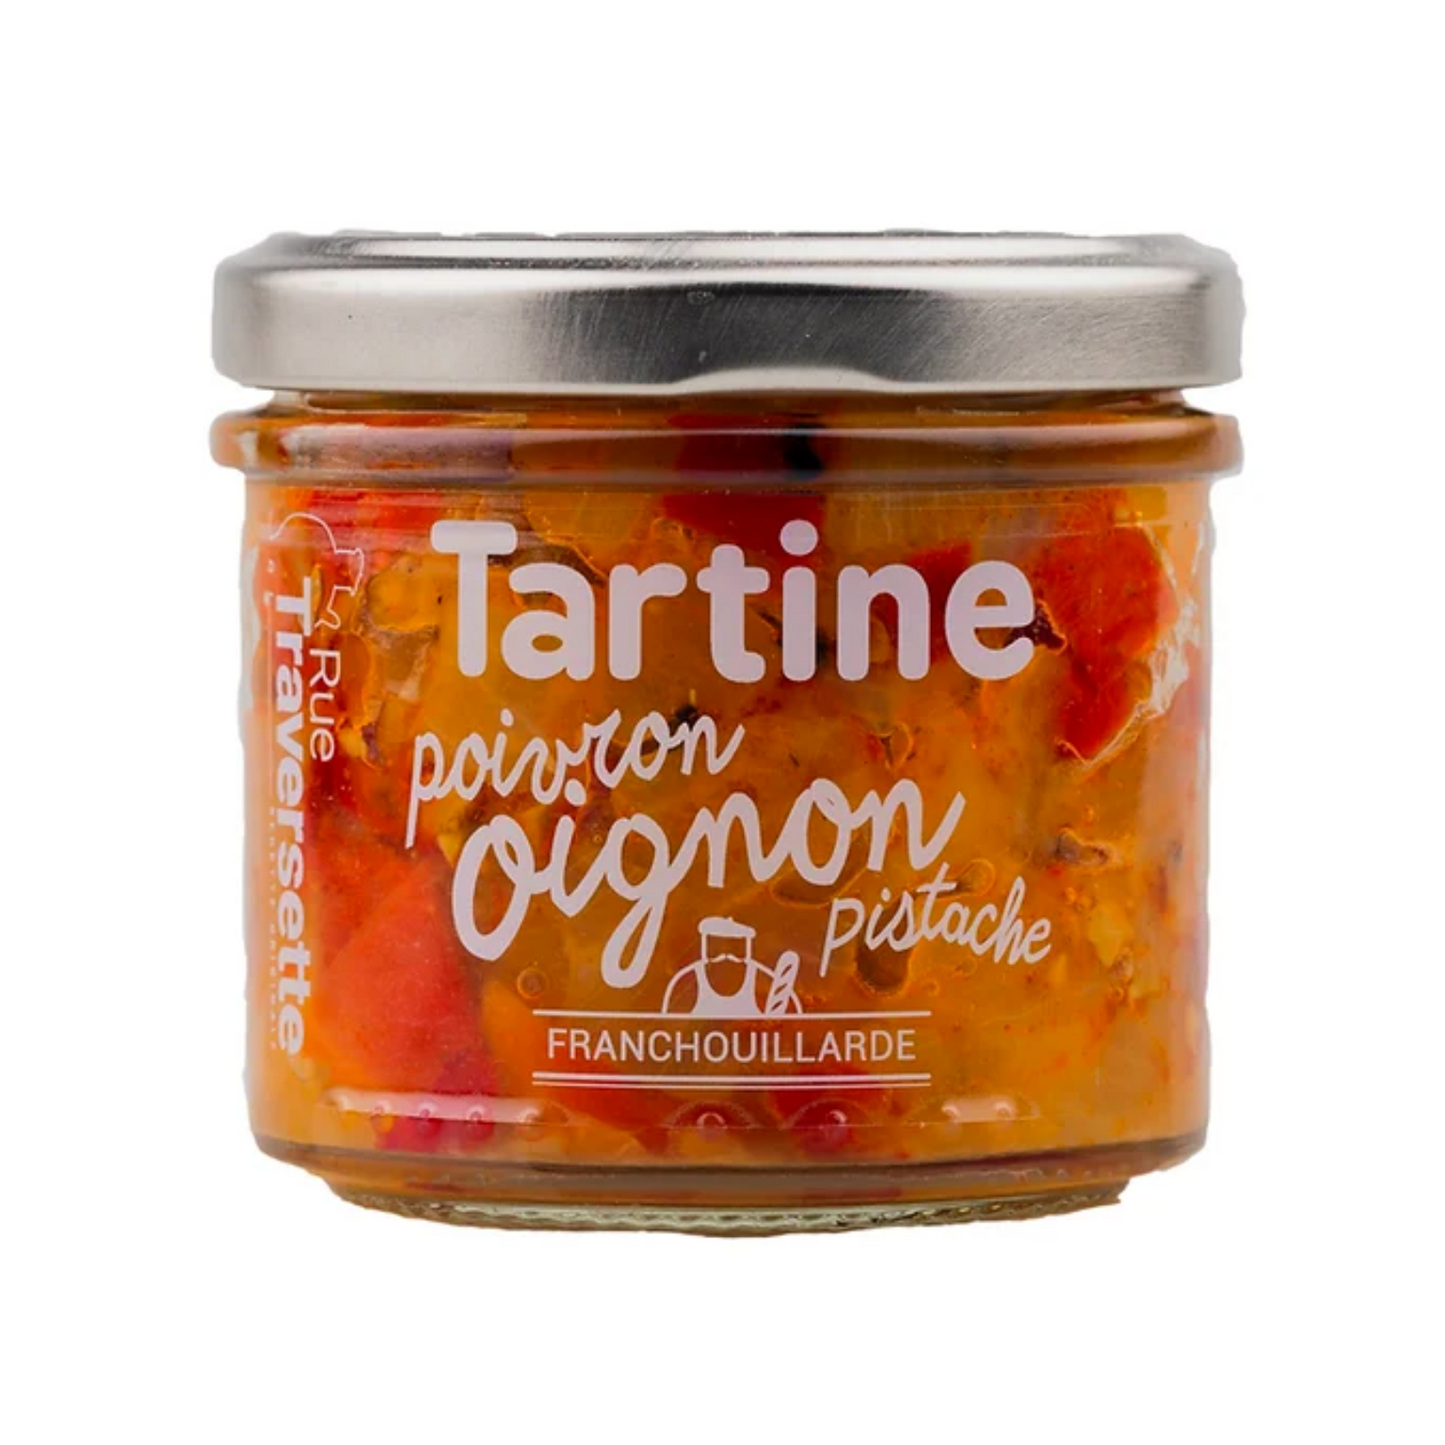 Oignon - poivron & pistache